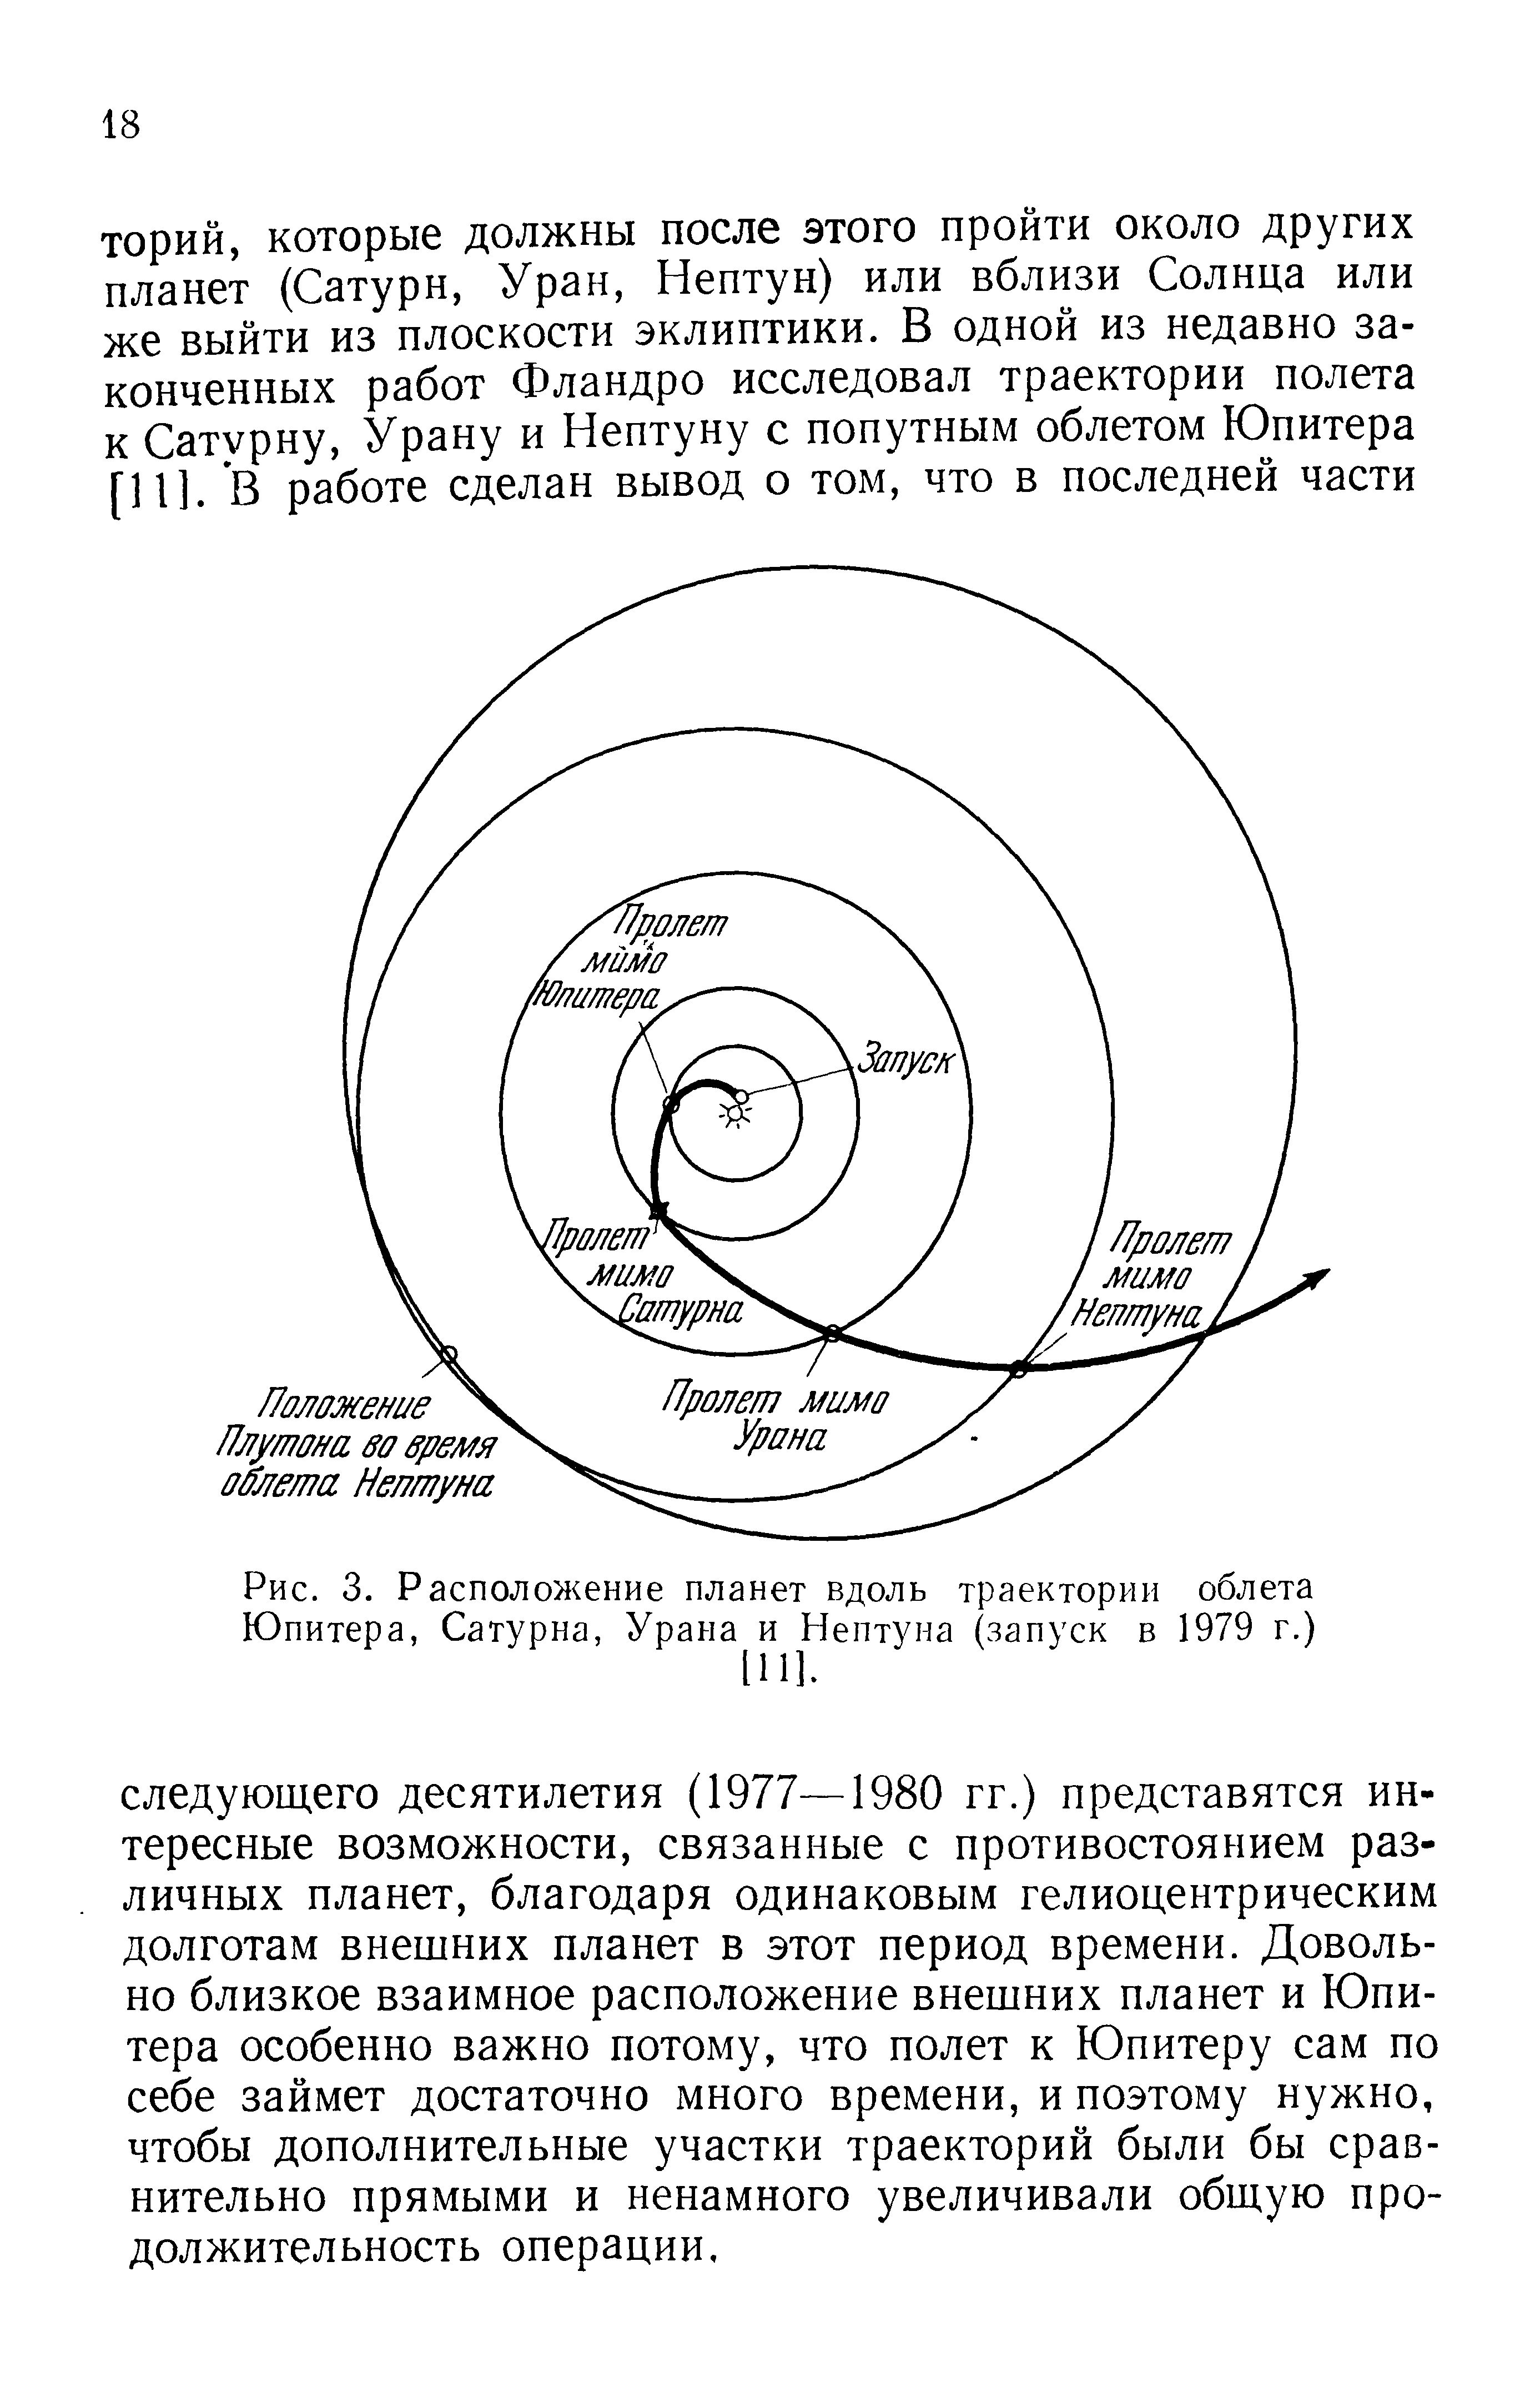 Рис. 3. Расположение планет вдоль траектории <a href="/info/365181">облета Юпитера</a>, Сатурна, Урана и Нептуна (запуск в 1979 г.)
